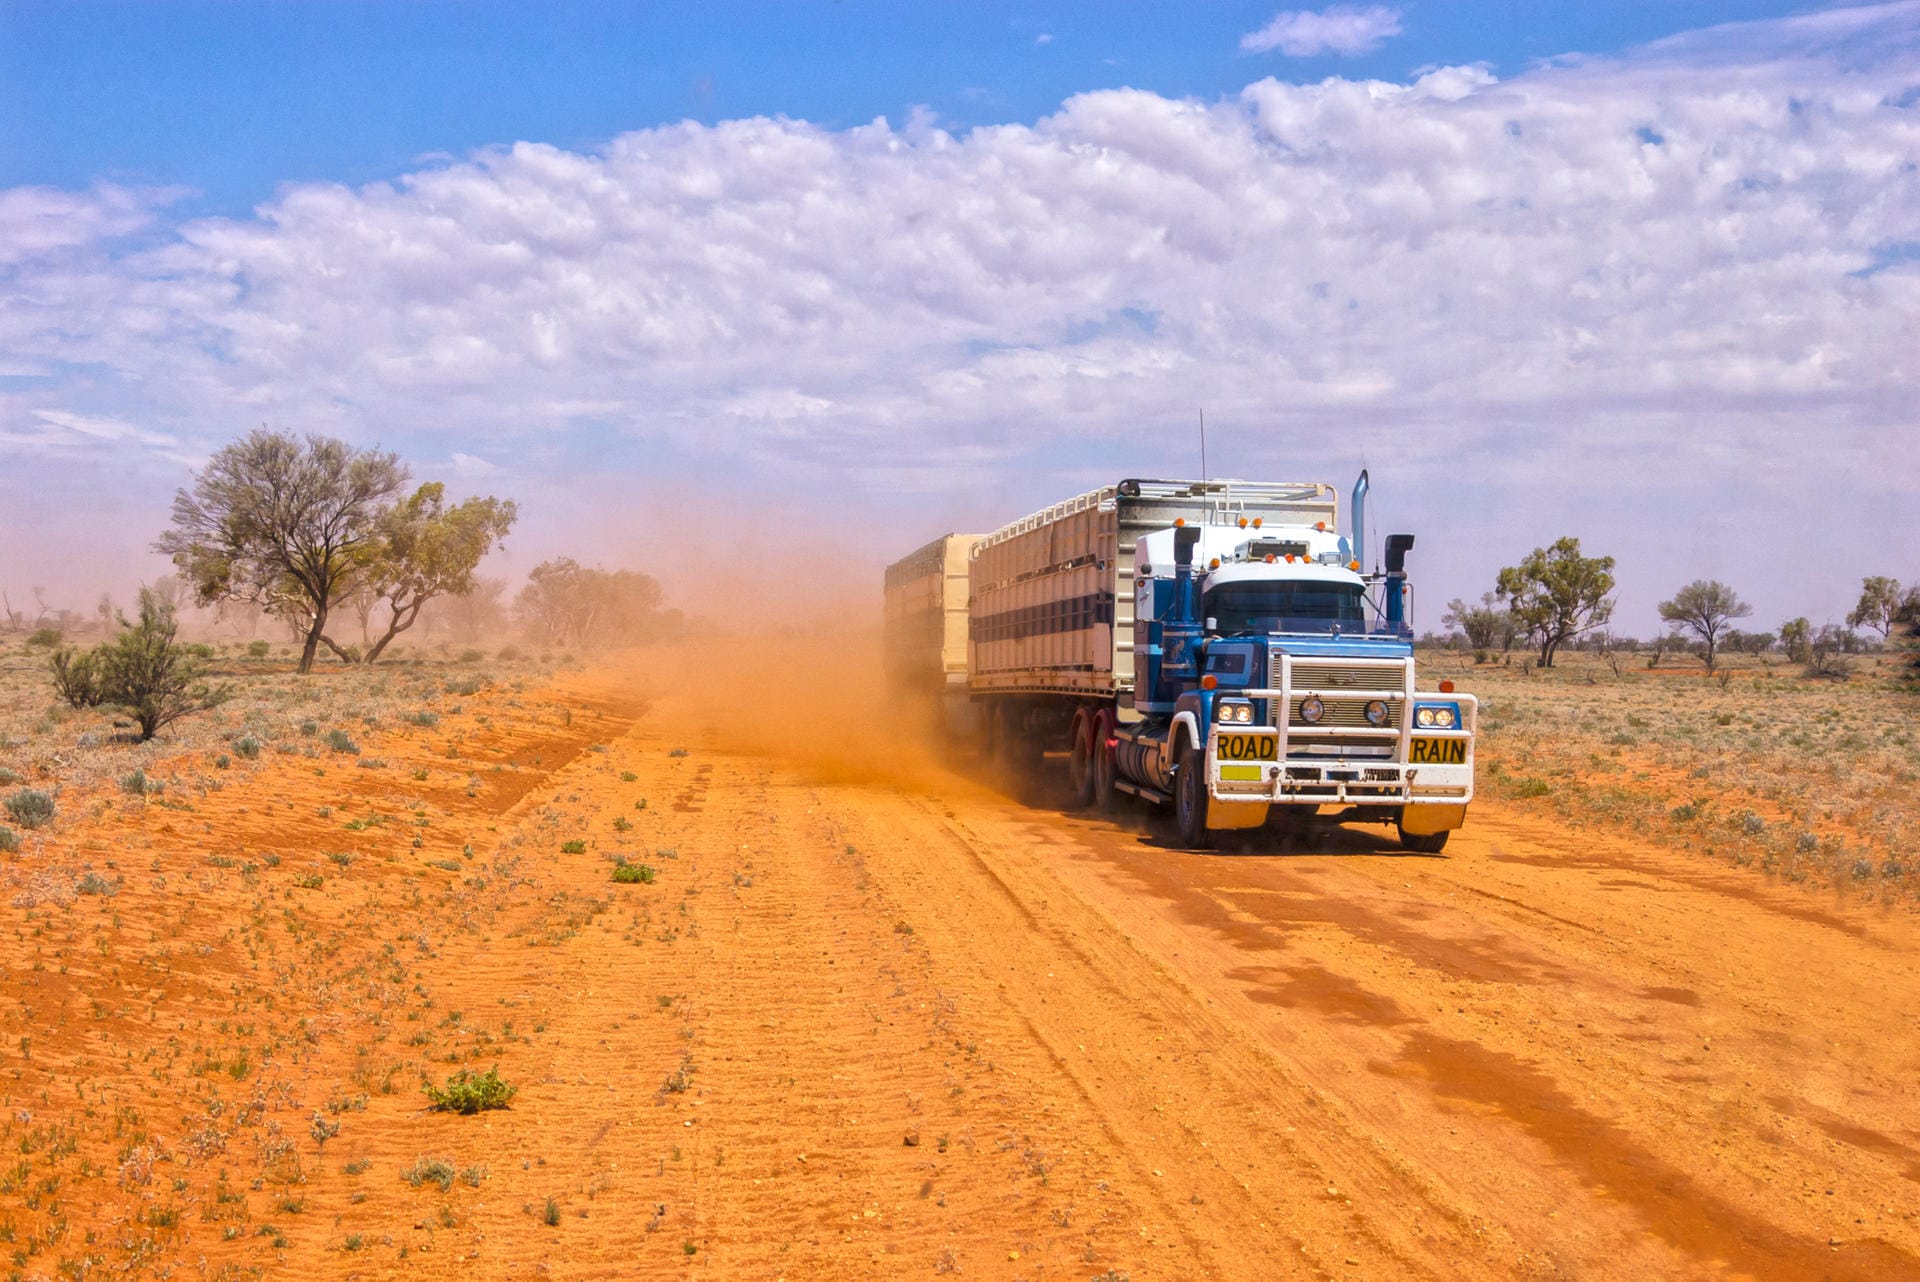 Roadtrain im Outback: Fahren Sie im einsamen Outback umher, begegnen Ihnen höchstens ein paar Roadtrains – riesige Trucks bis zu 53 Meter lang.